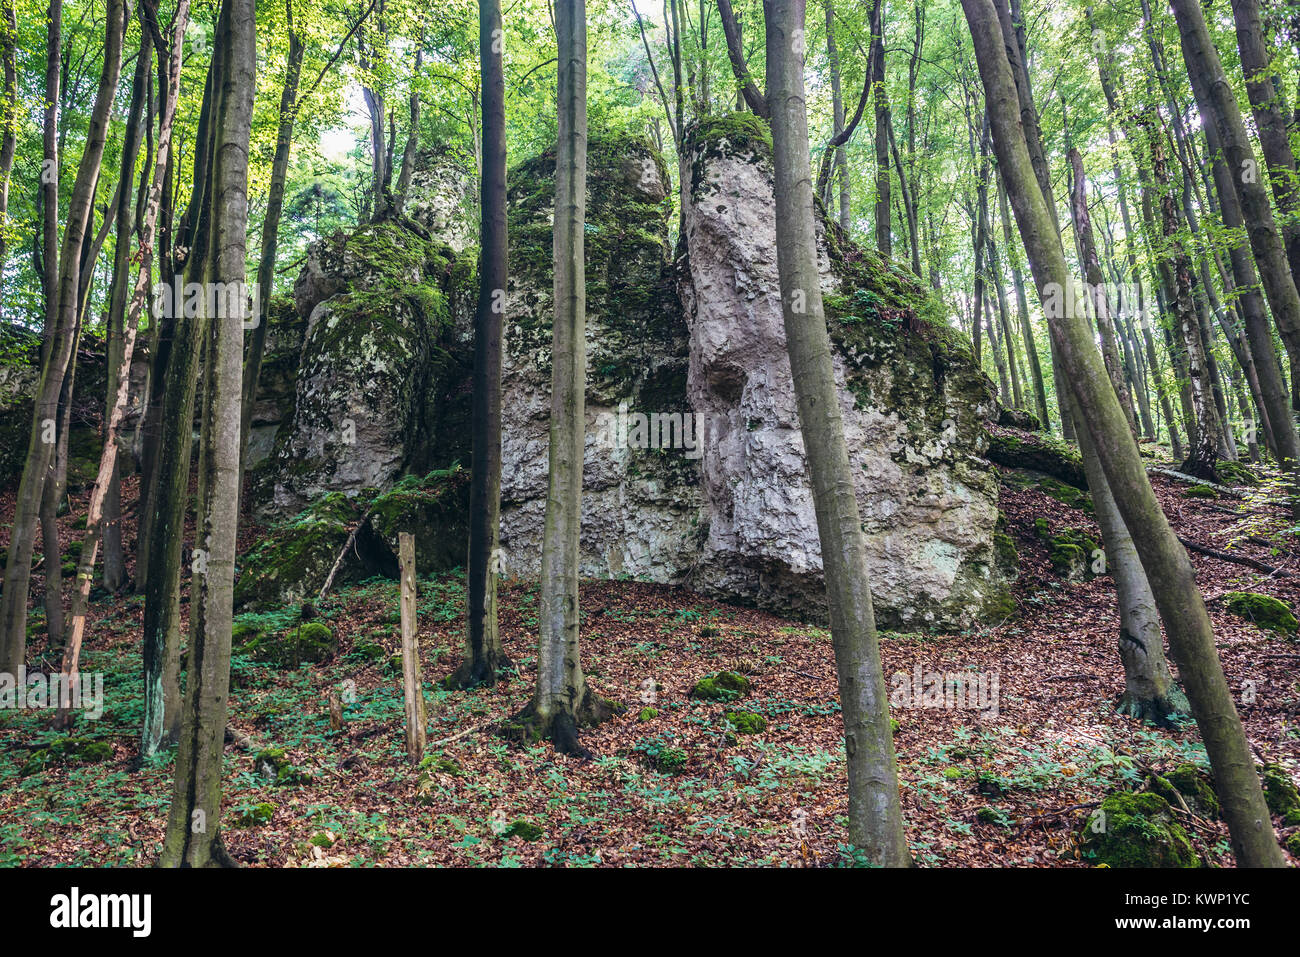 Les roches calcaires de la Réserve Naturelle de Sokole Gory (Falcon) situé dans les montagnes du Jura polonais dans la région de voïvodie de Silésie Pologne du sud Banque D'Images